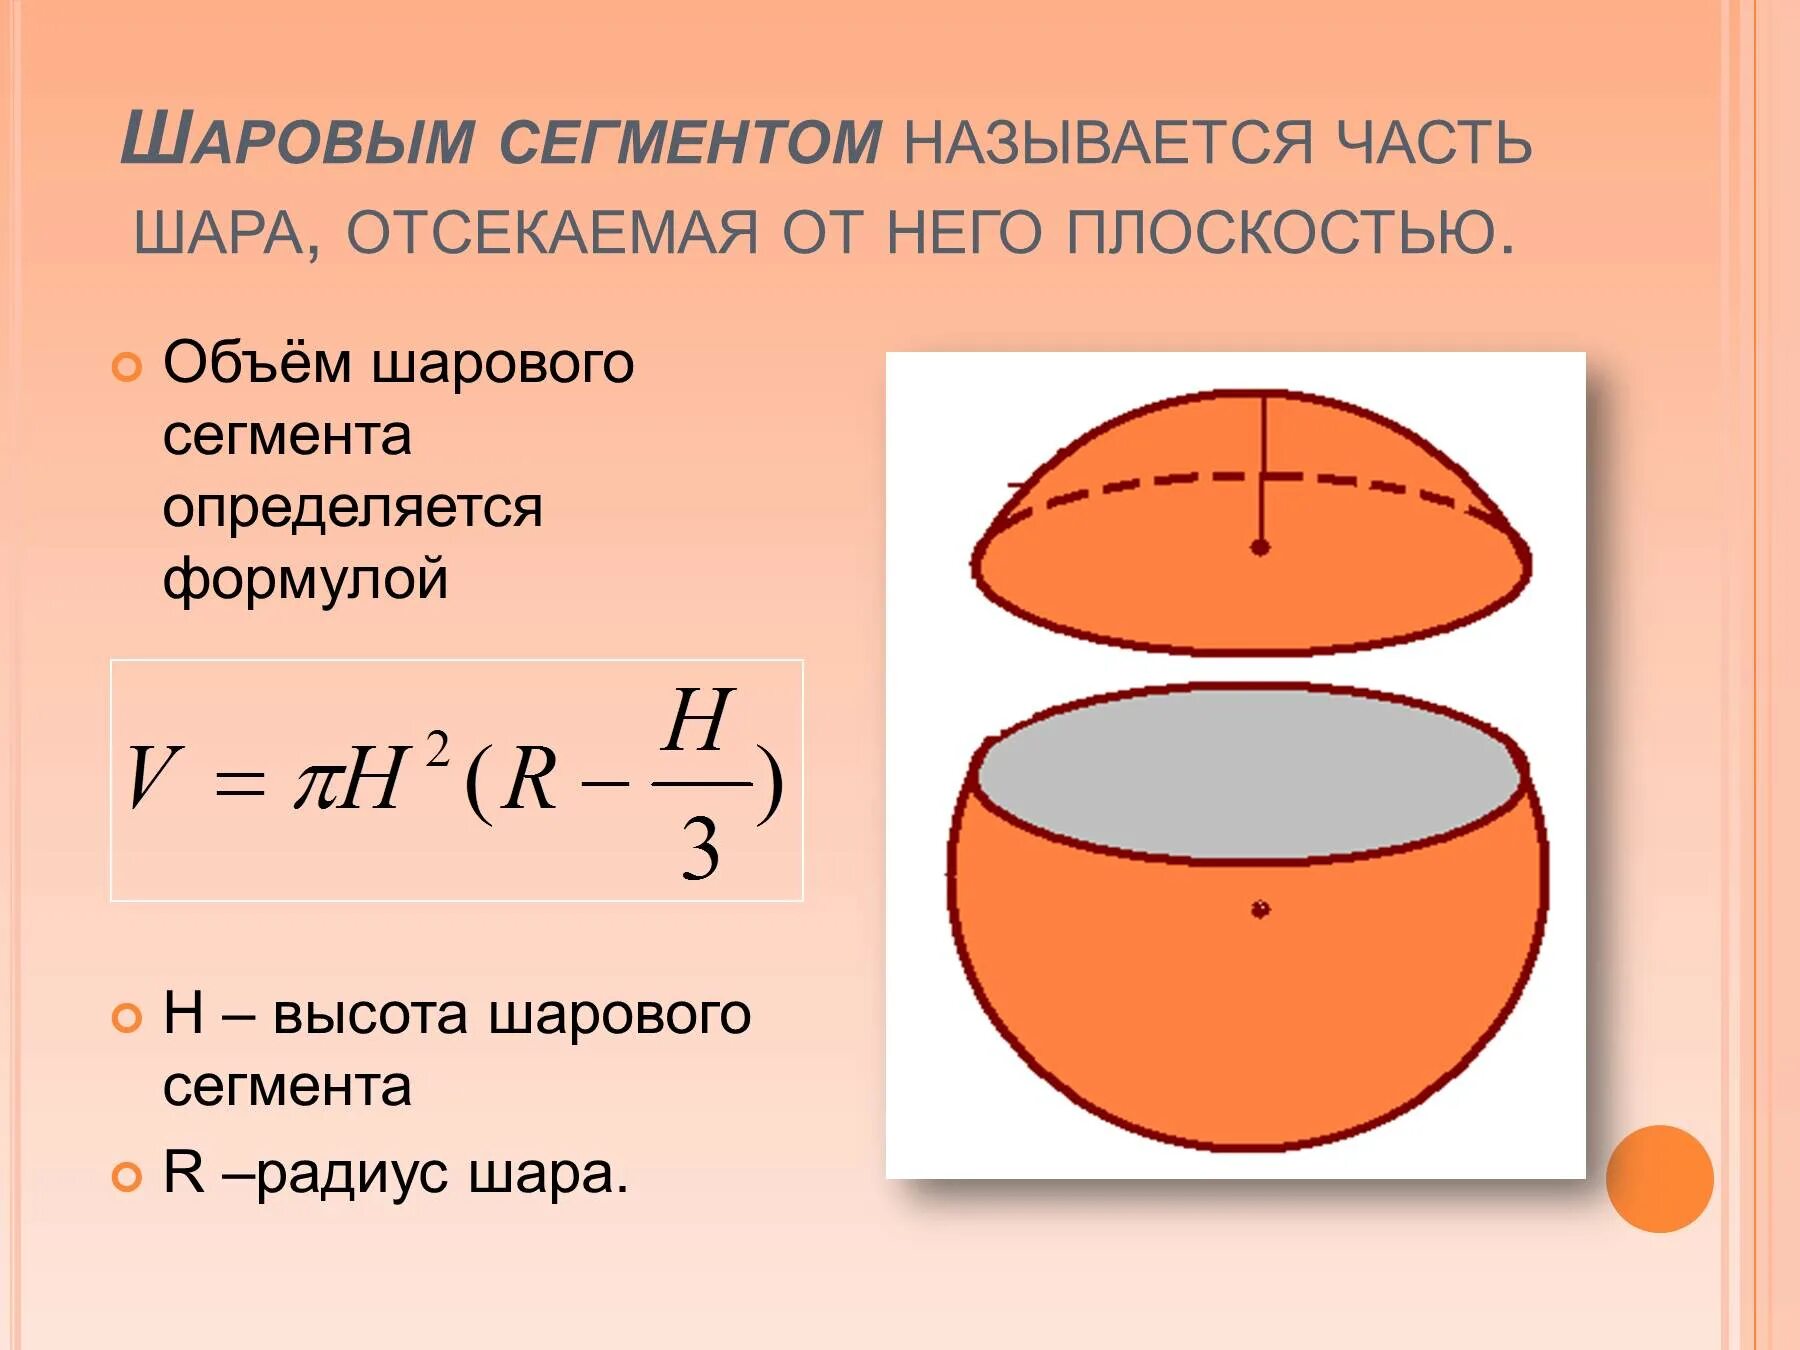 С пов шара. Формула объема части шара. Объём сегмента шара формула. Объем шарового сегмента формула. Объем шара и его частей формулы.